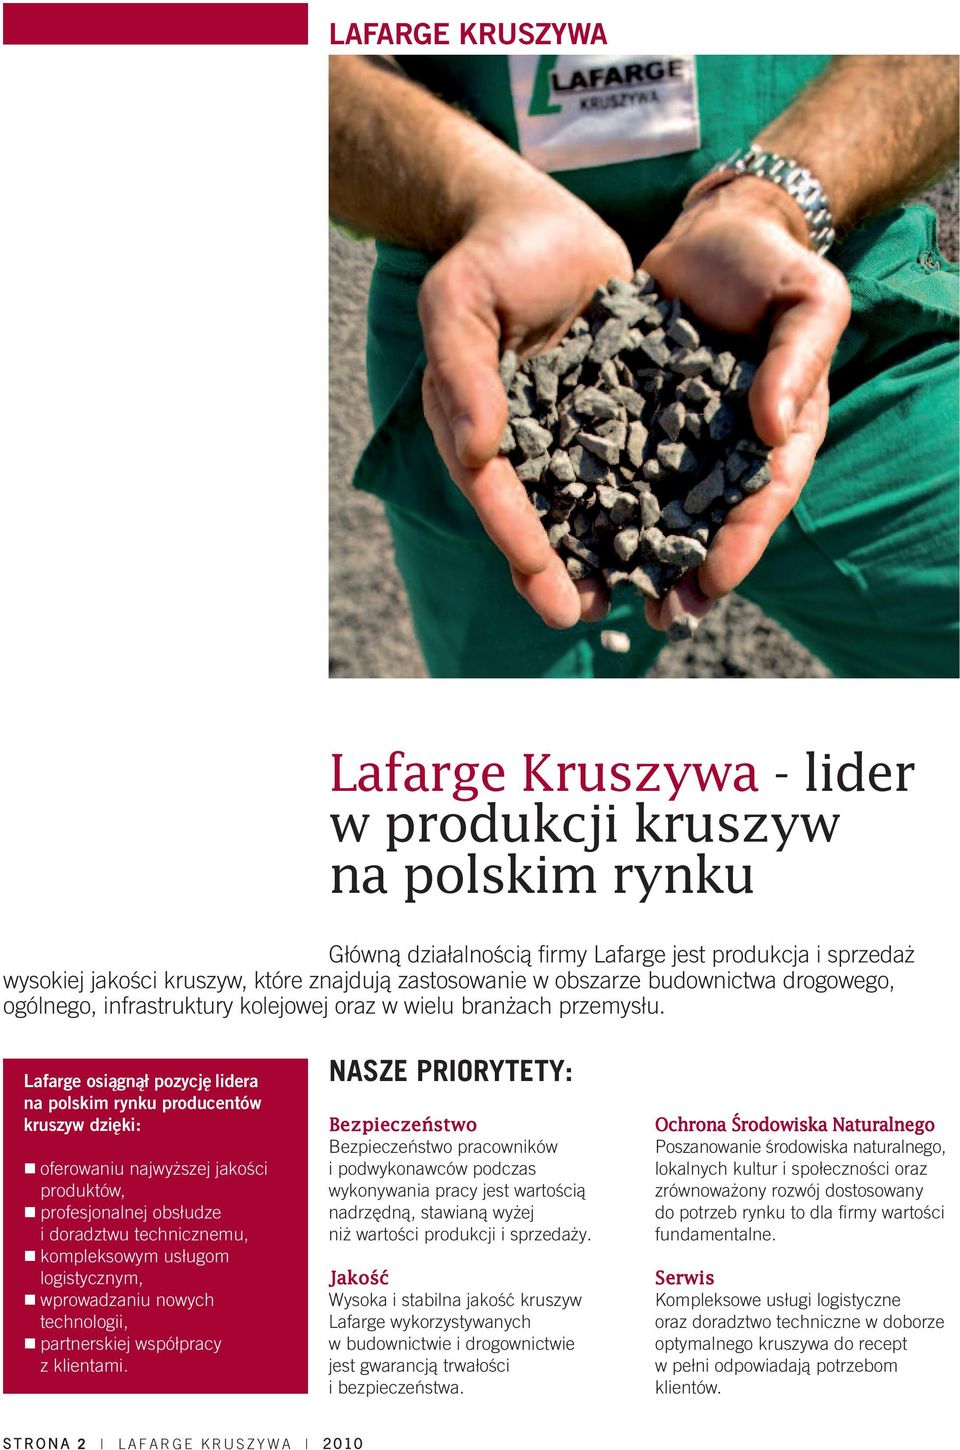 Lafarge osiągnął pozycję lidera na polskim rynku producentów kruszyw dzięki: oferowaniu najwyższej jakości produktów, profesjonalnej obsłudze i doradztwu technicznemu, kompleksowym usługom